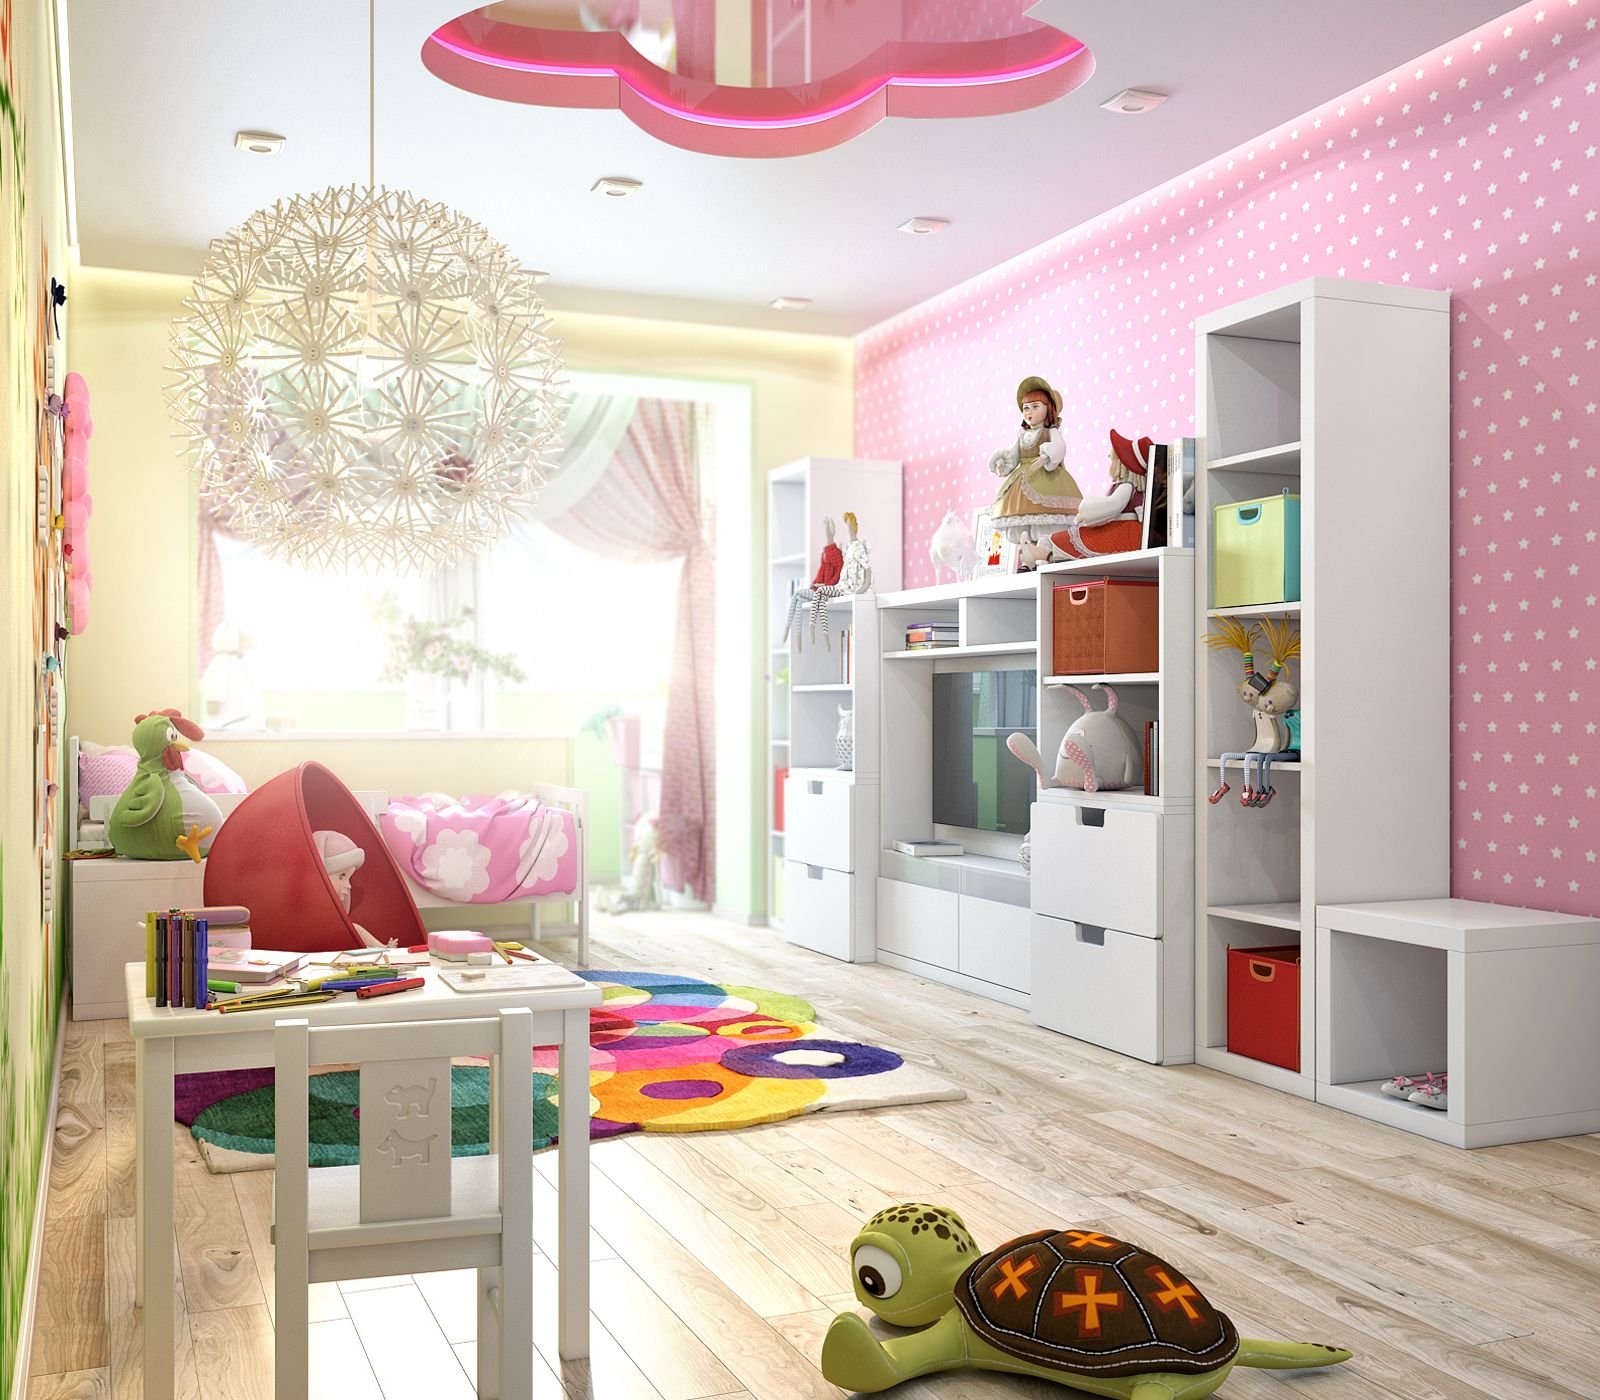 Дизайн маленькой детской комнаты - идеи интерьера для девочки и мальчика, как организовать пространство и обставить, варианты планировки, в тч для двоих детей и подростков + фото